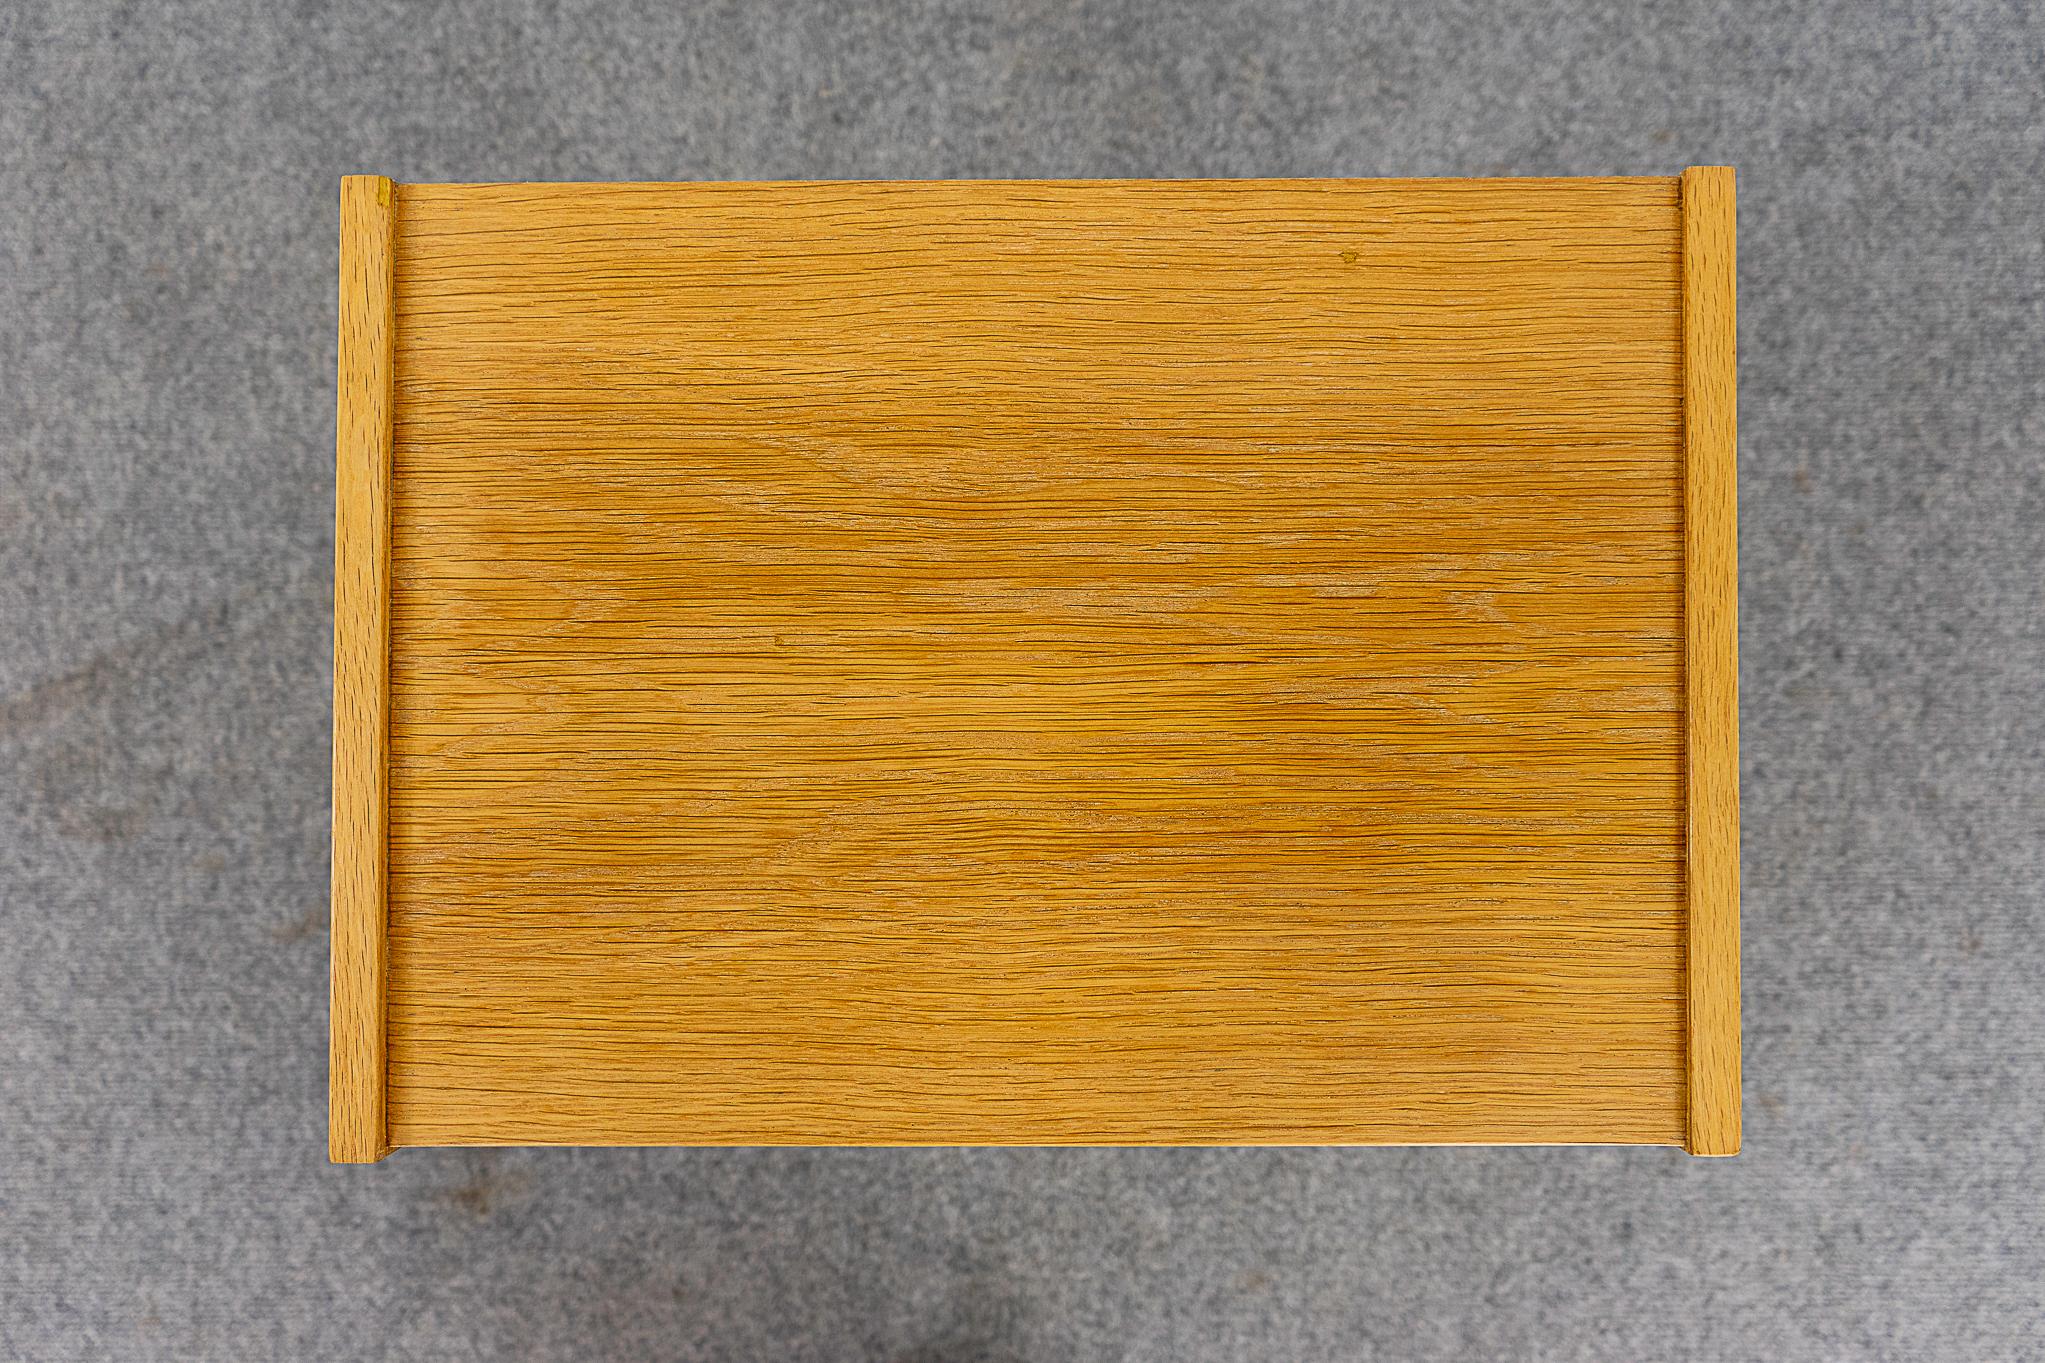 Scandinavian Modern Danish Mid-Century Modern Oak & Tile Bedside Table For Sale